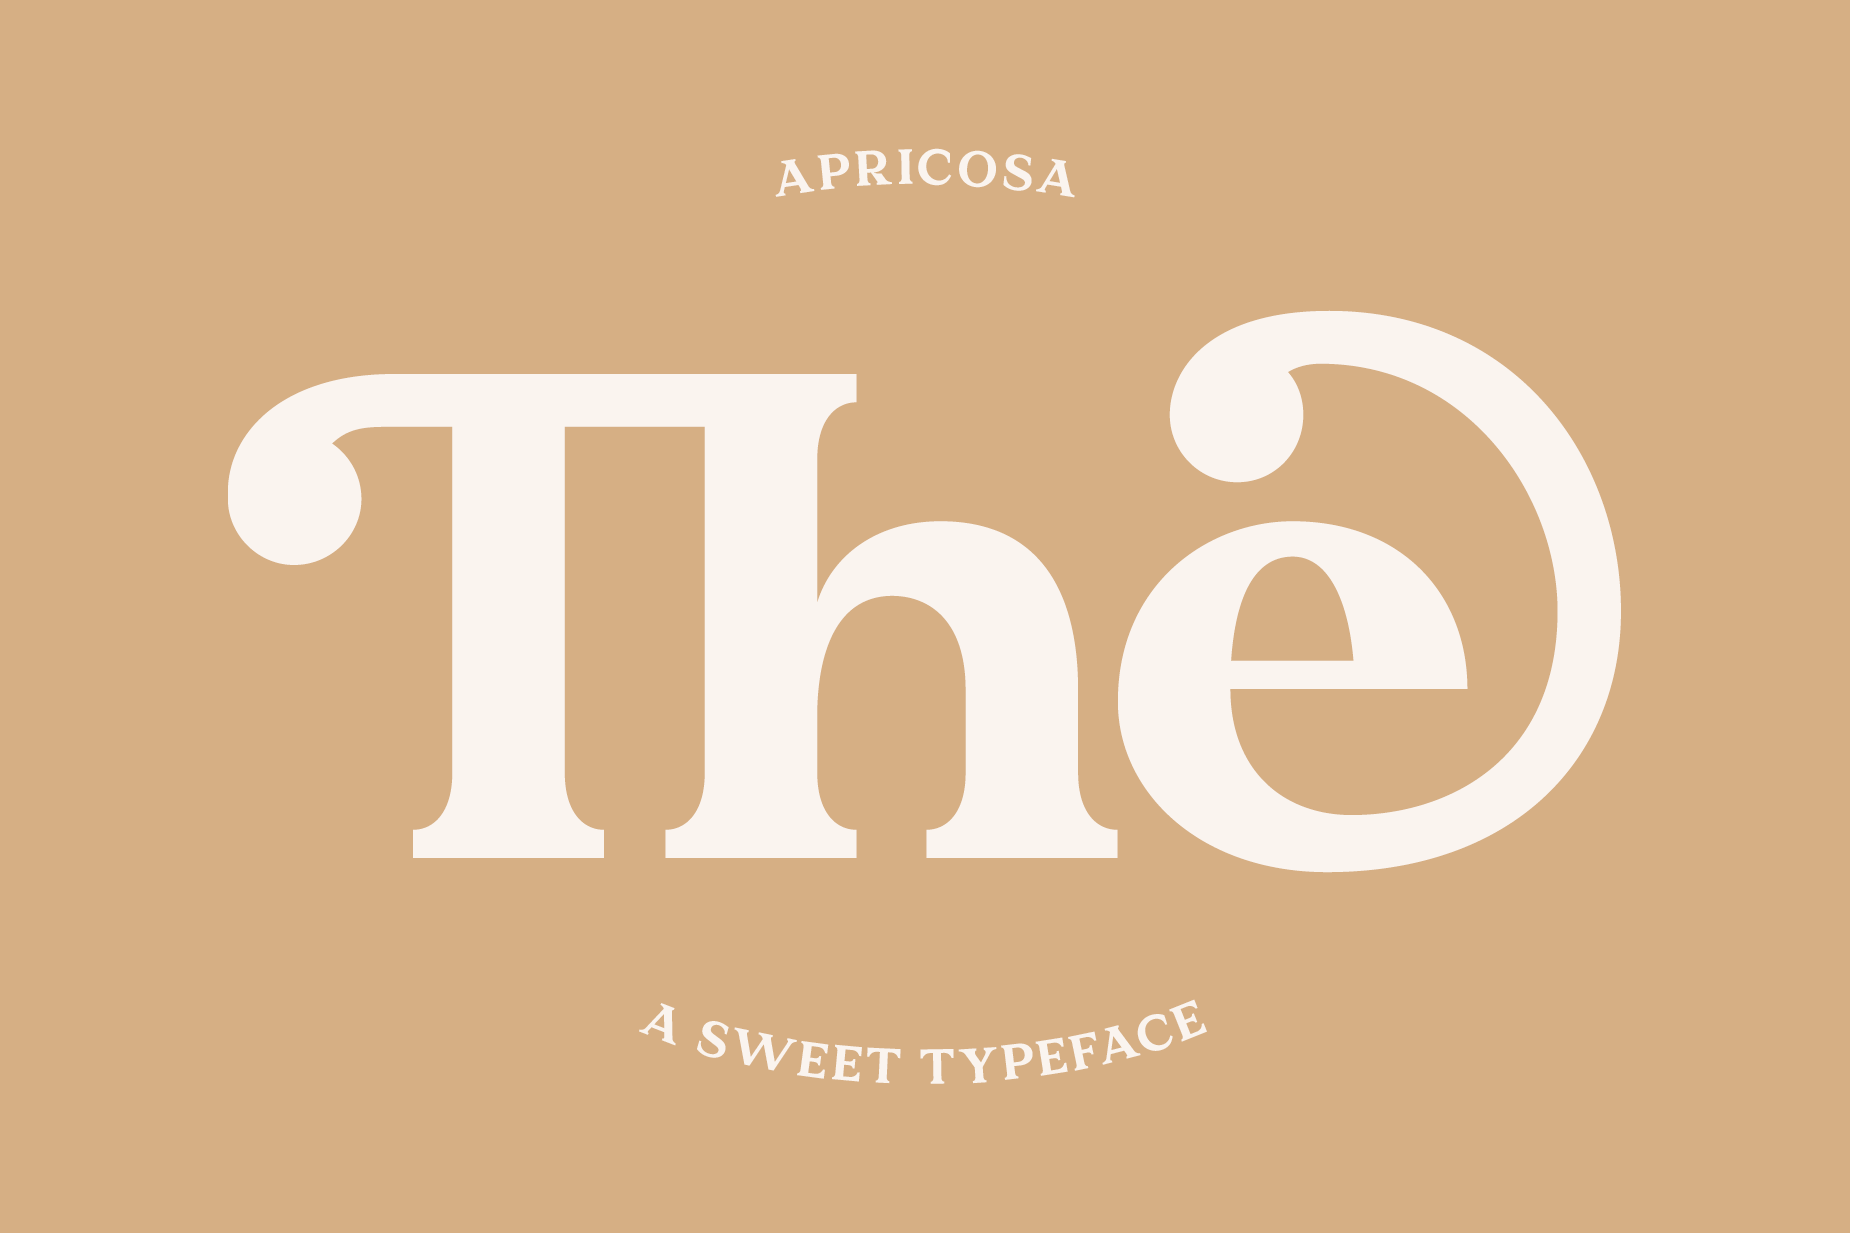 Apricosa Font Design - The